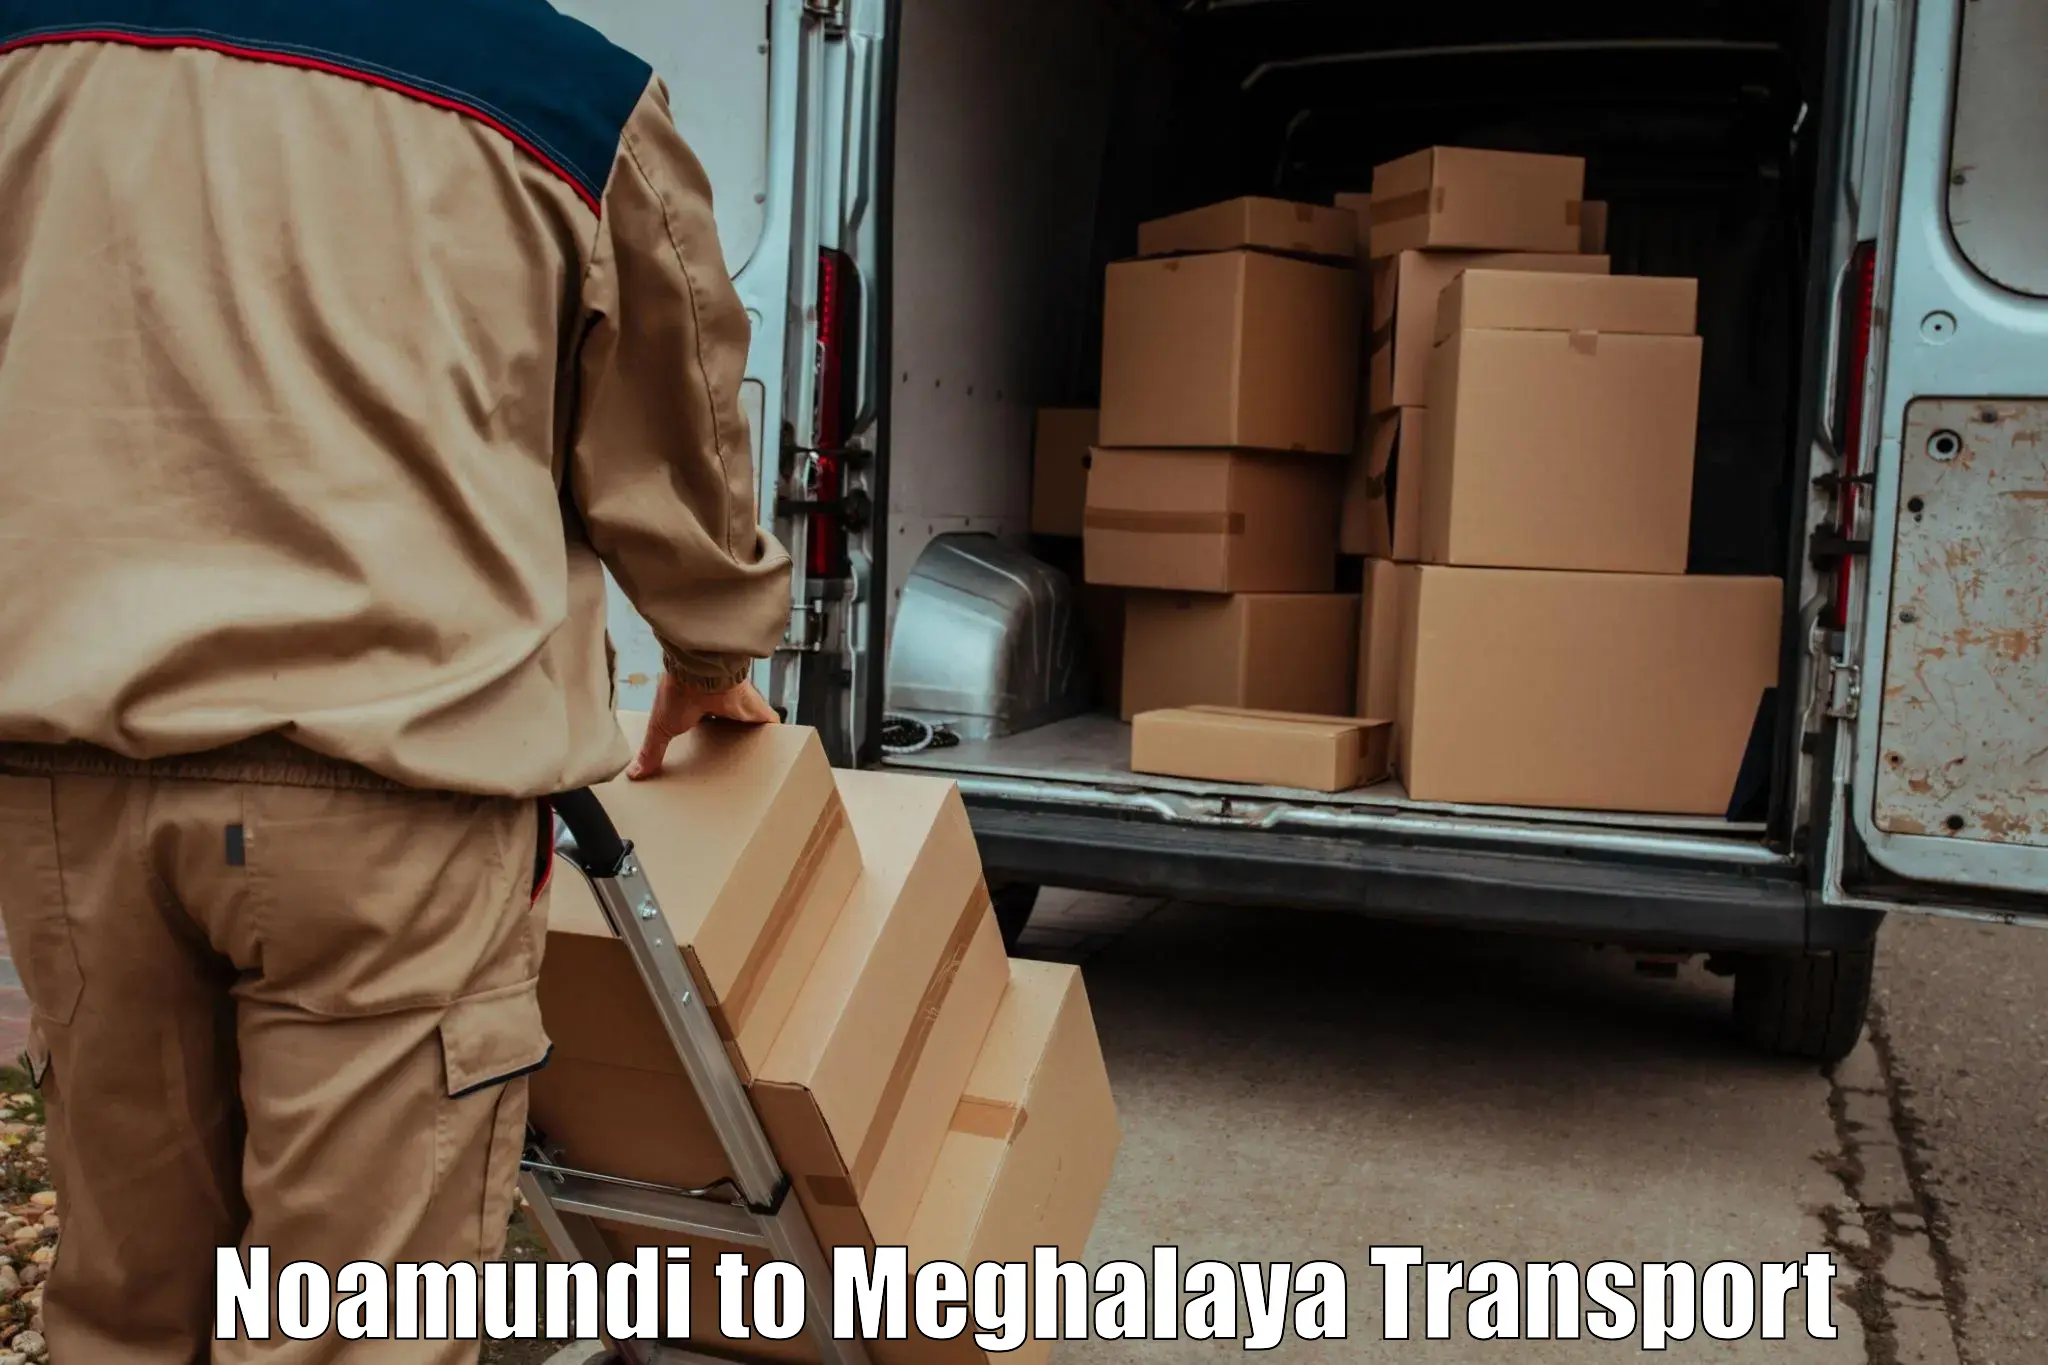 Furniture transport service in Noamundi to Cherrapunji